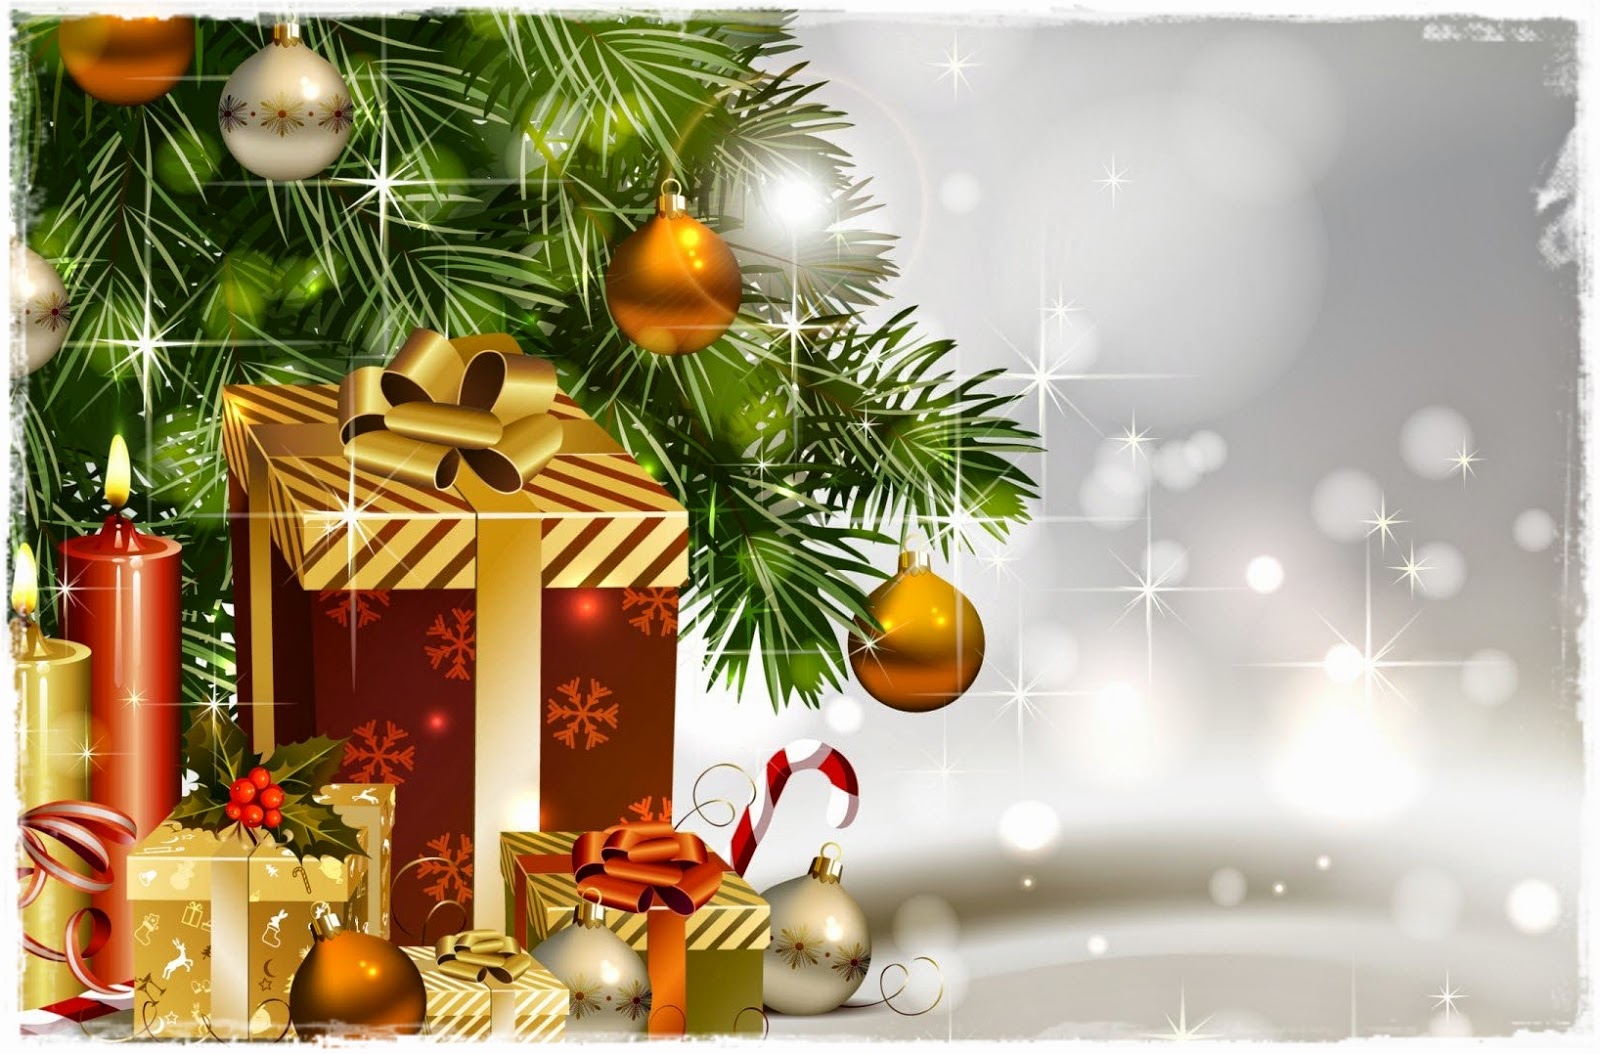 壁紙de natal,クリスマスツリー,クリスマスの飾り,クリスマスオーナメント,木,クリスマス・イブ